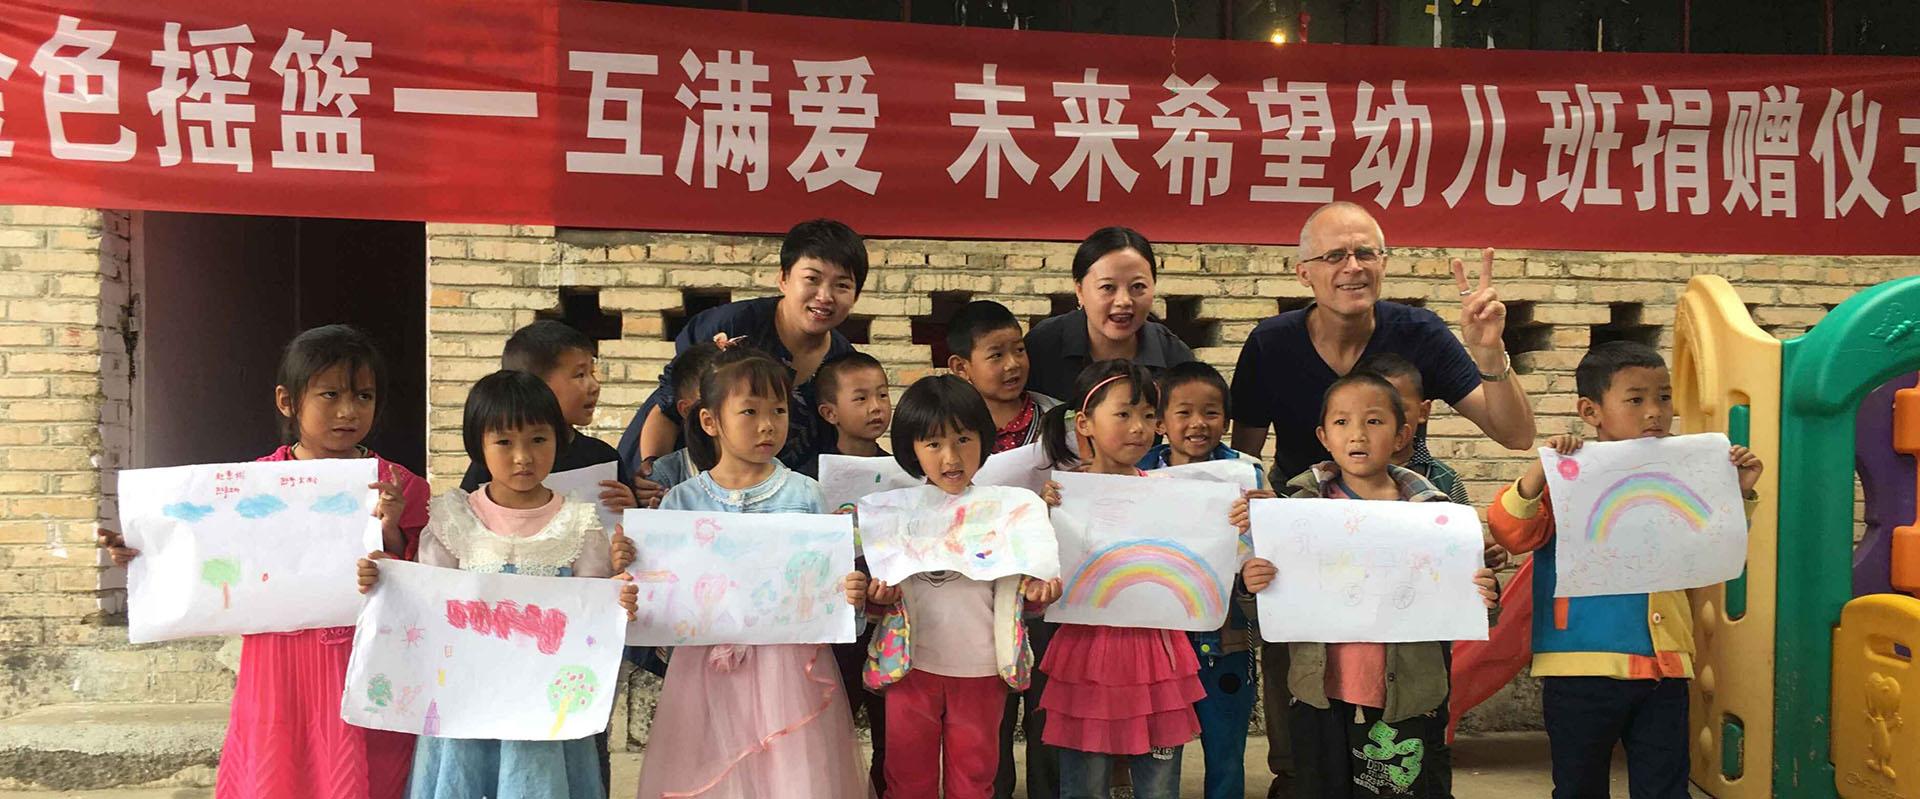 为世界公益组织“互满爱. 人与人”在云南龙陵县的公益幼儿园“未来希望幼儿班”募集善款。